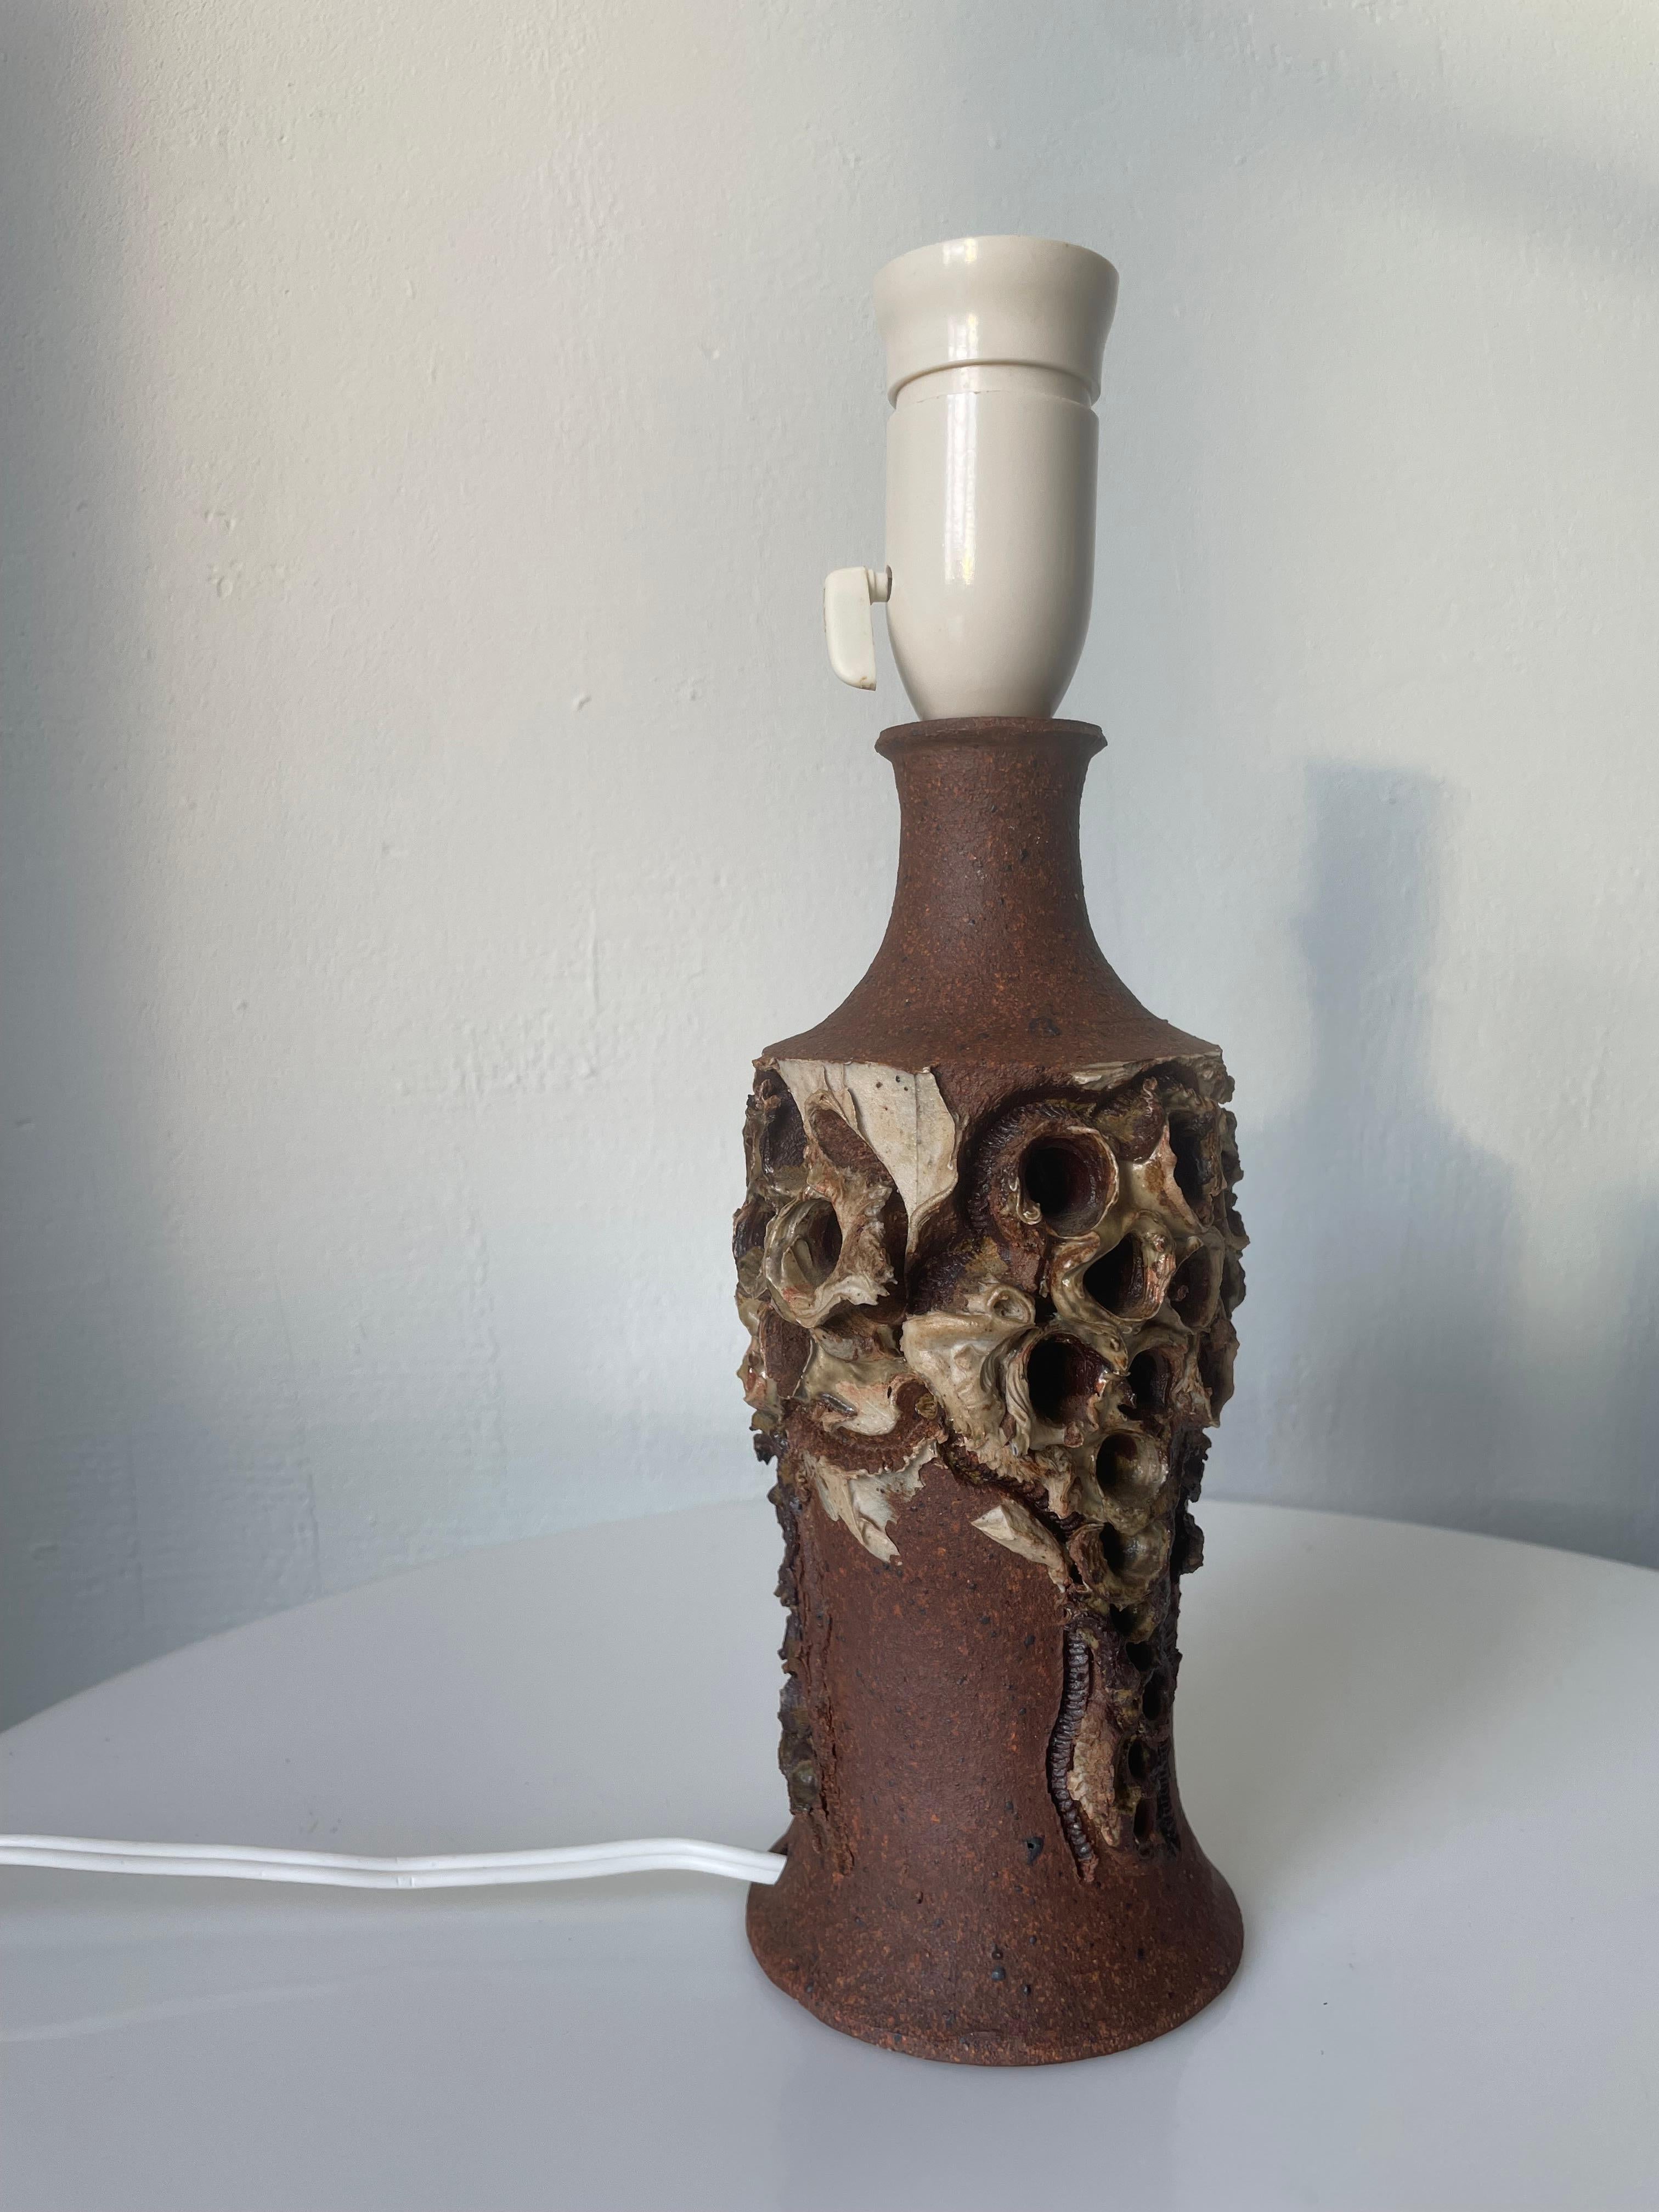 B. M. Nielsen Brutalist Organic Ceramic Art Table Lamp, 1960s For Sale 3